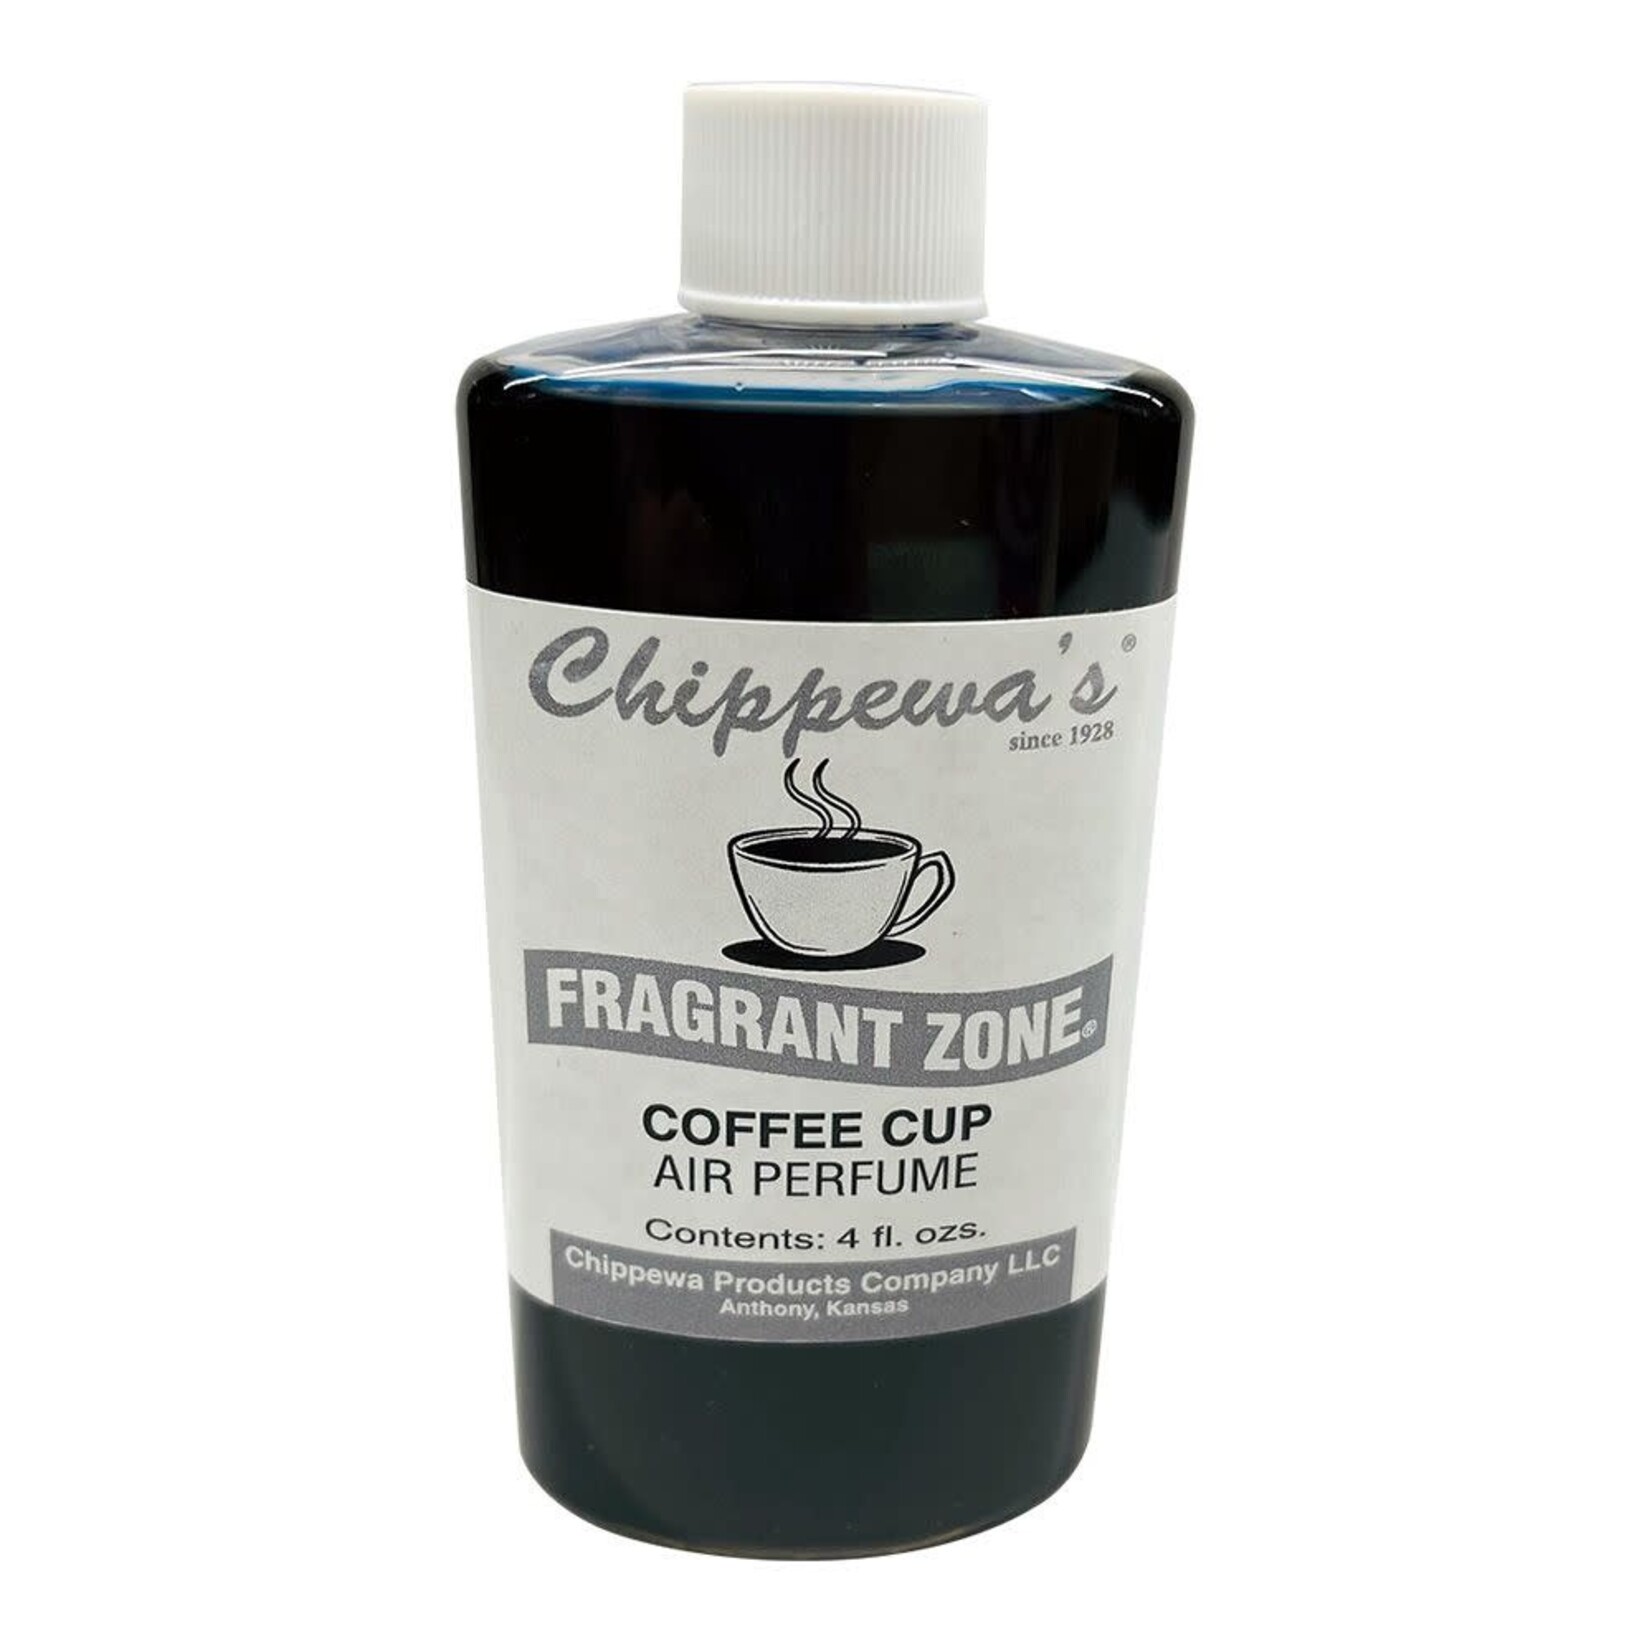 Chippewa's Fragrant Zone Air Freshener Coffee Cup